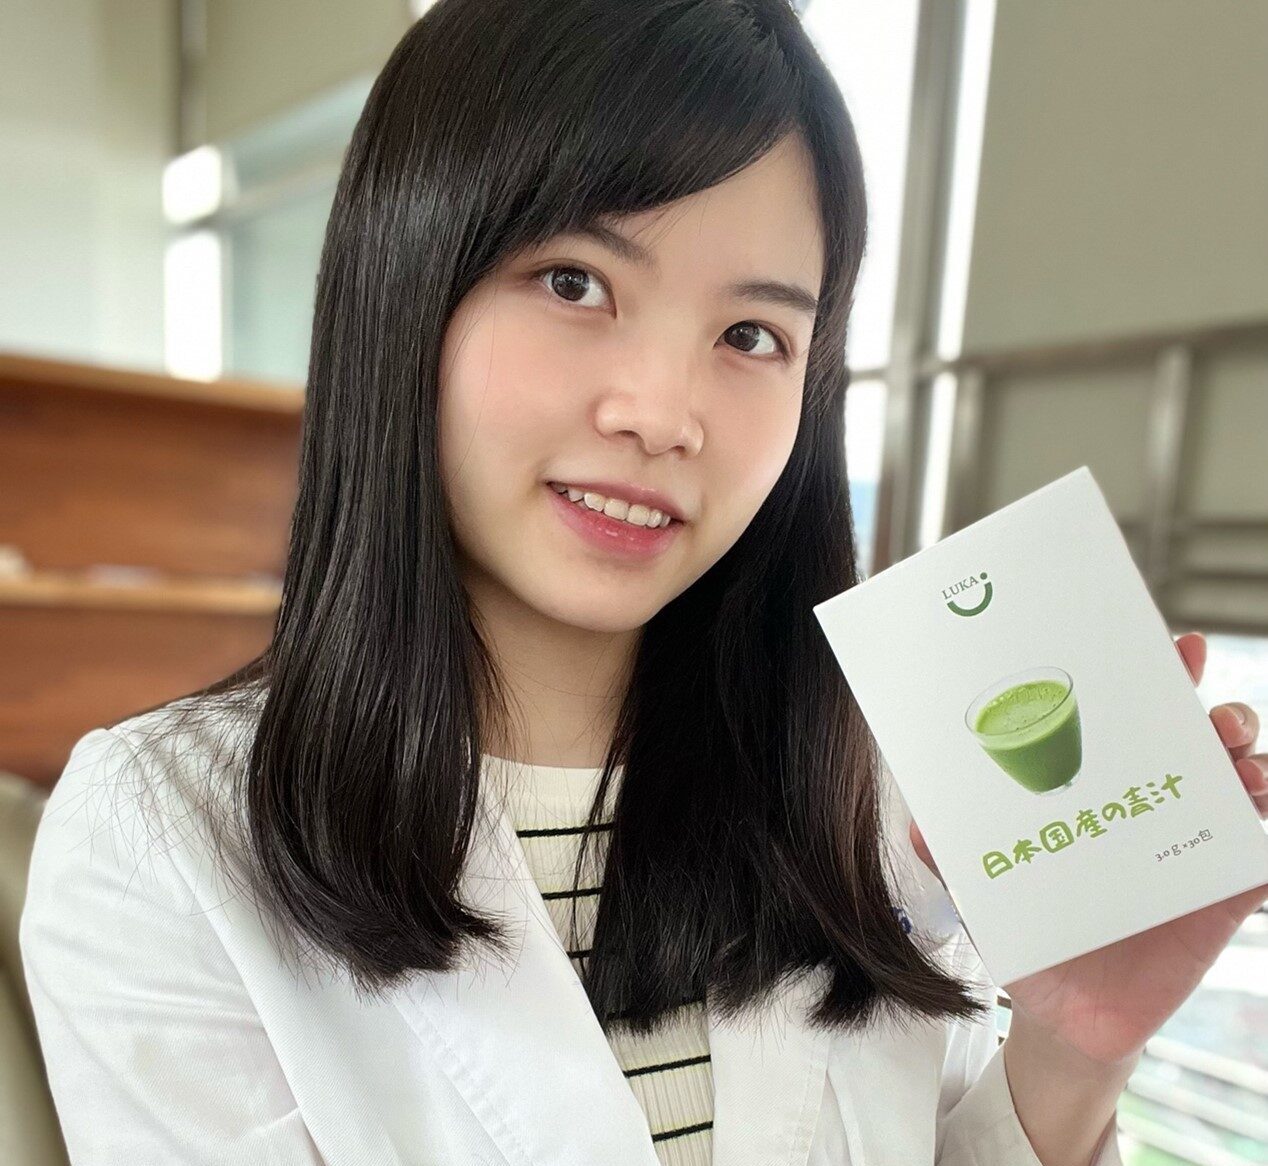 婦科醫師也愛喝的LUKA日本乳酸纖青汁